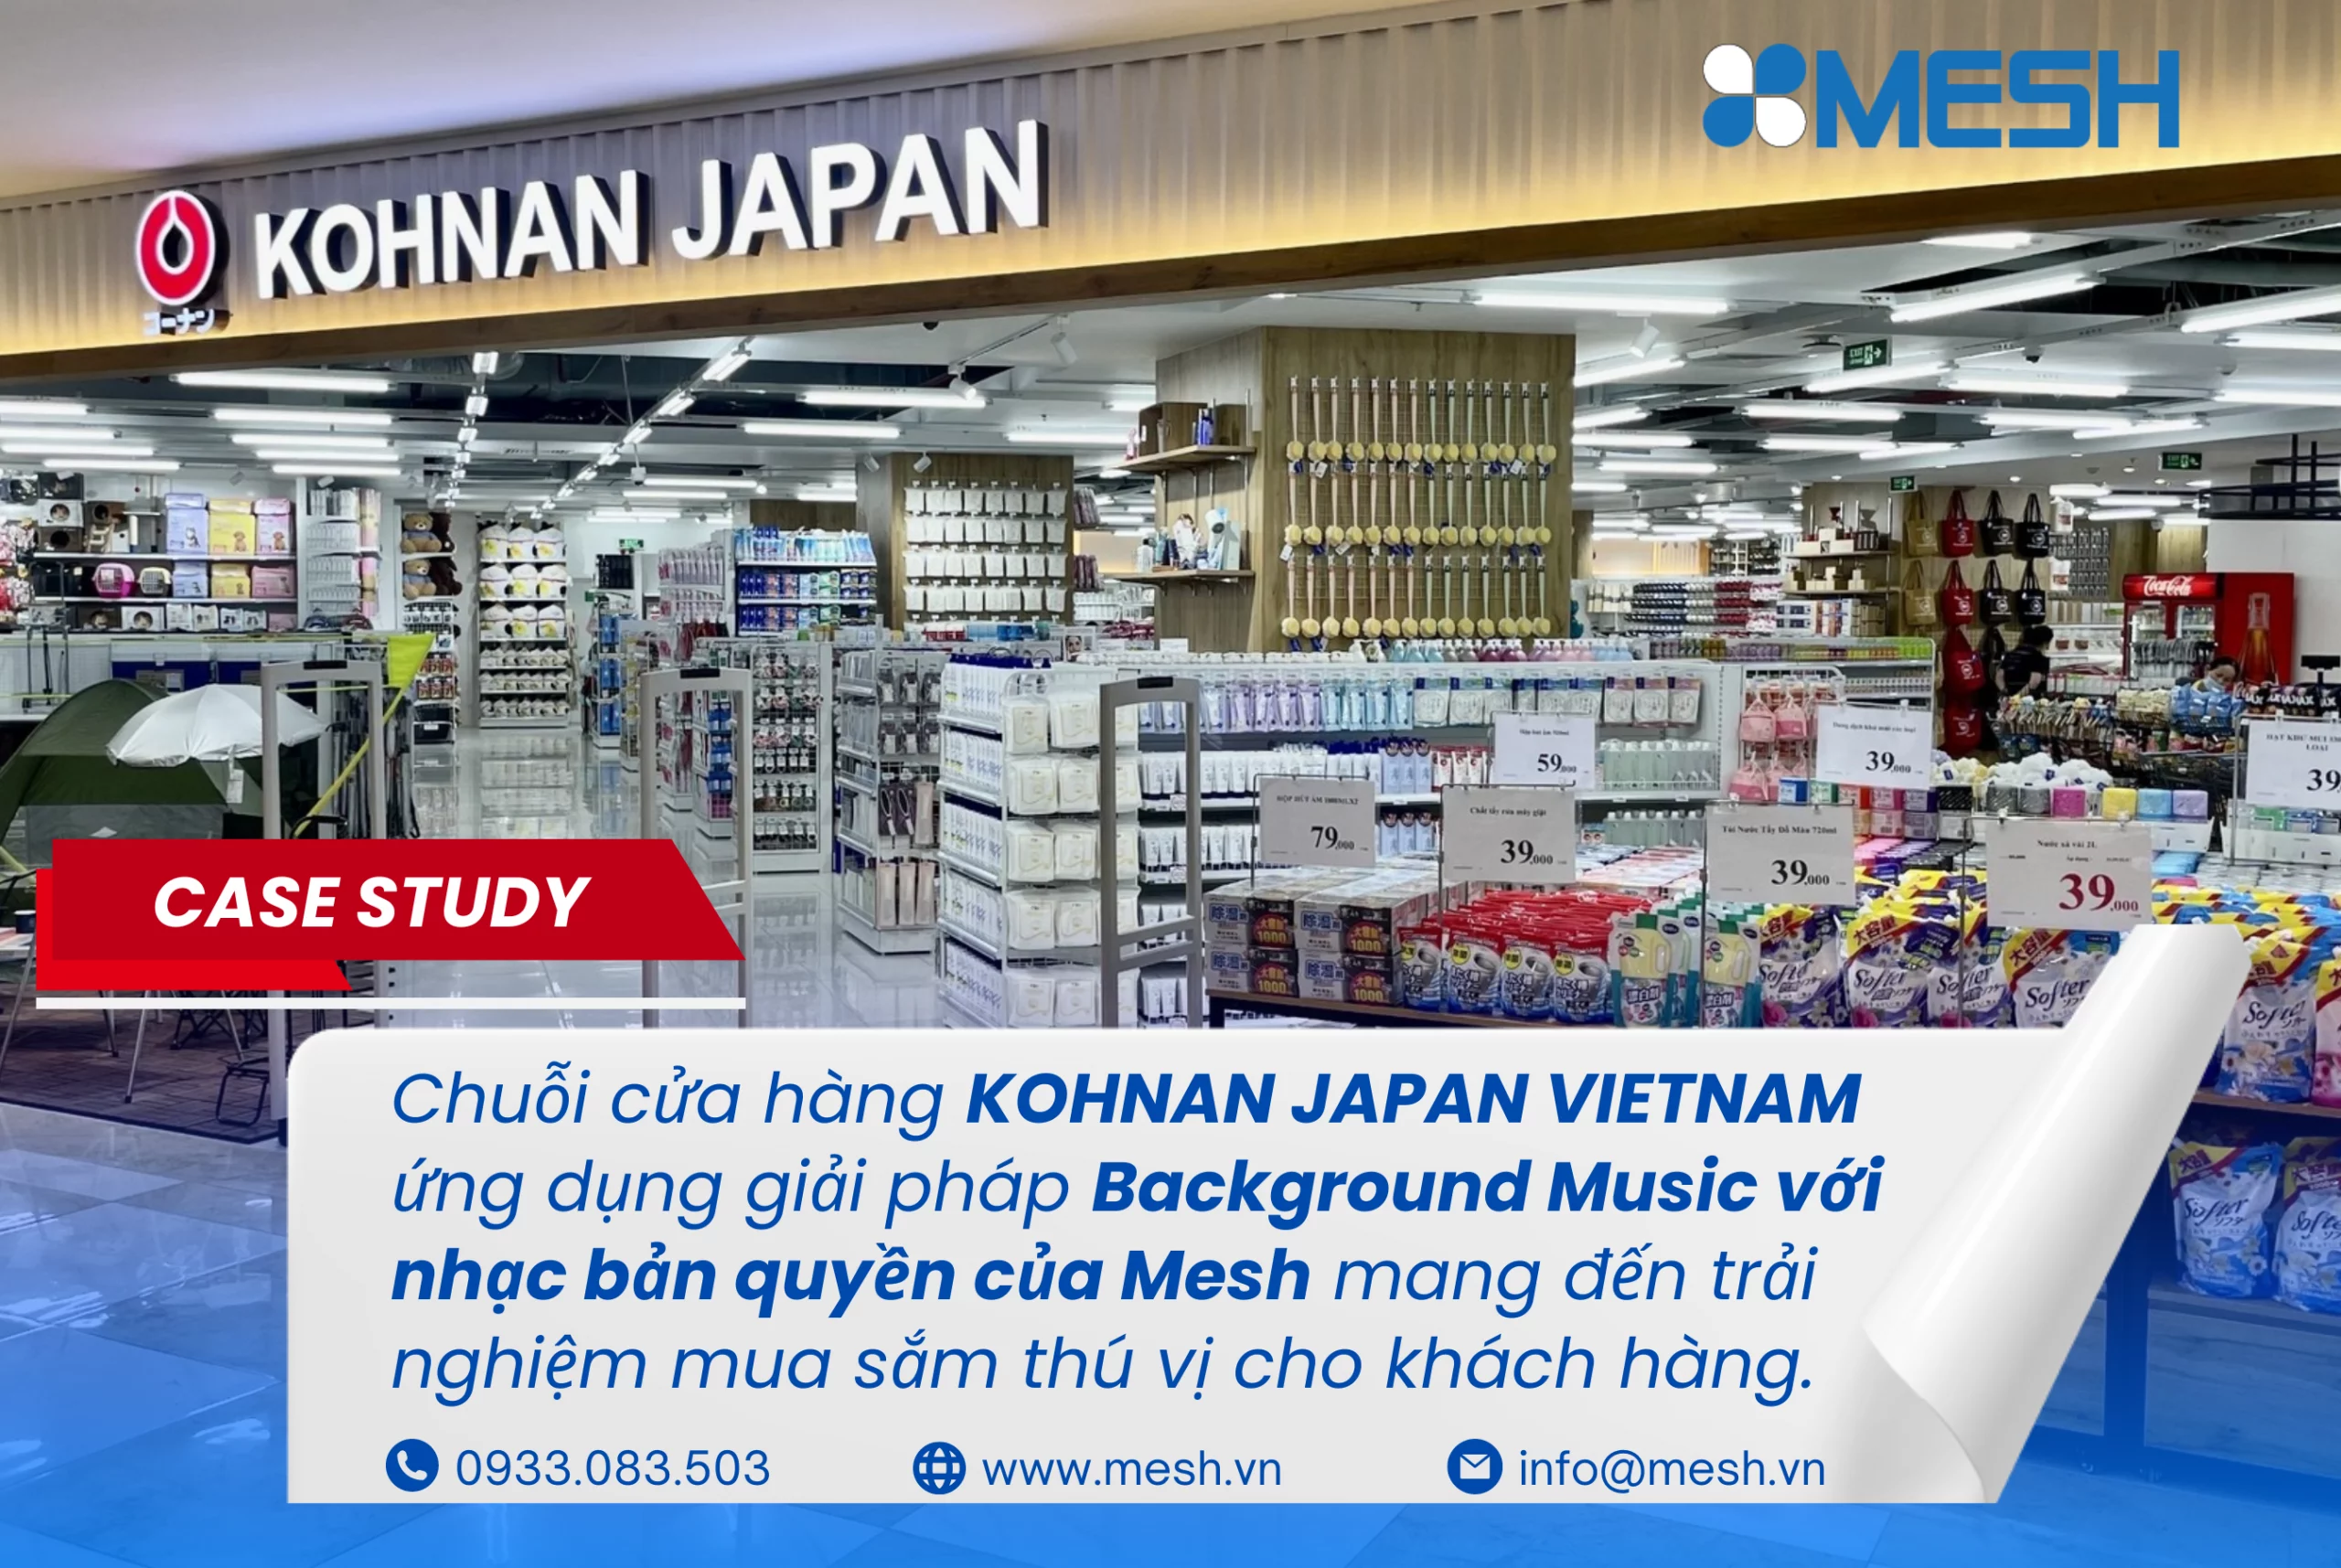 Chuỗi cửa hàng KOHNAN JAPAN VIETNAM ứng dụng giải pháp Background Music với nhạc bản quyền của Mesh mang đến trải nghiệm mua sắm thú vị cho khách hàng